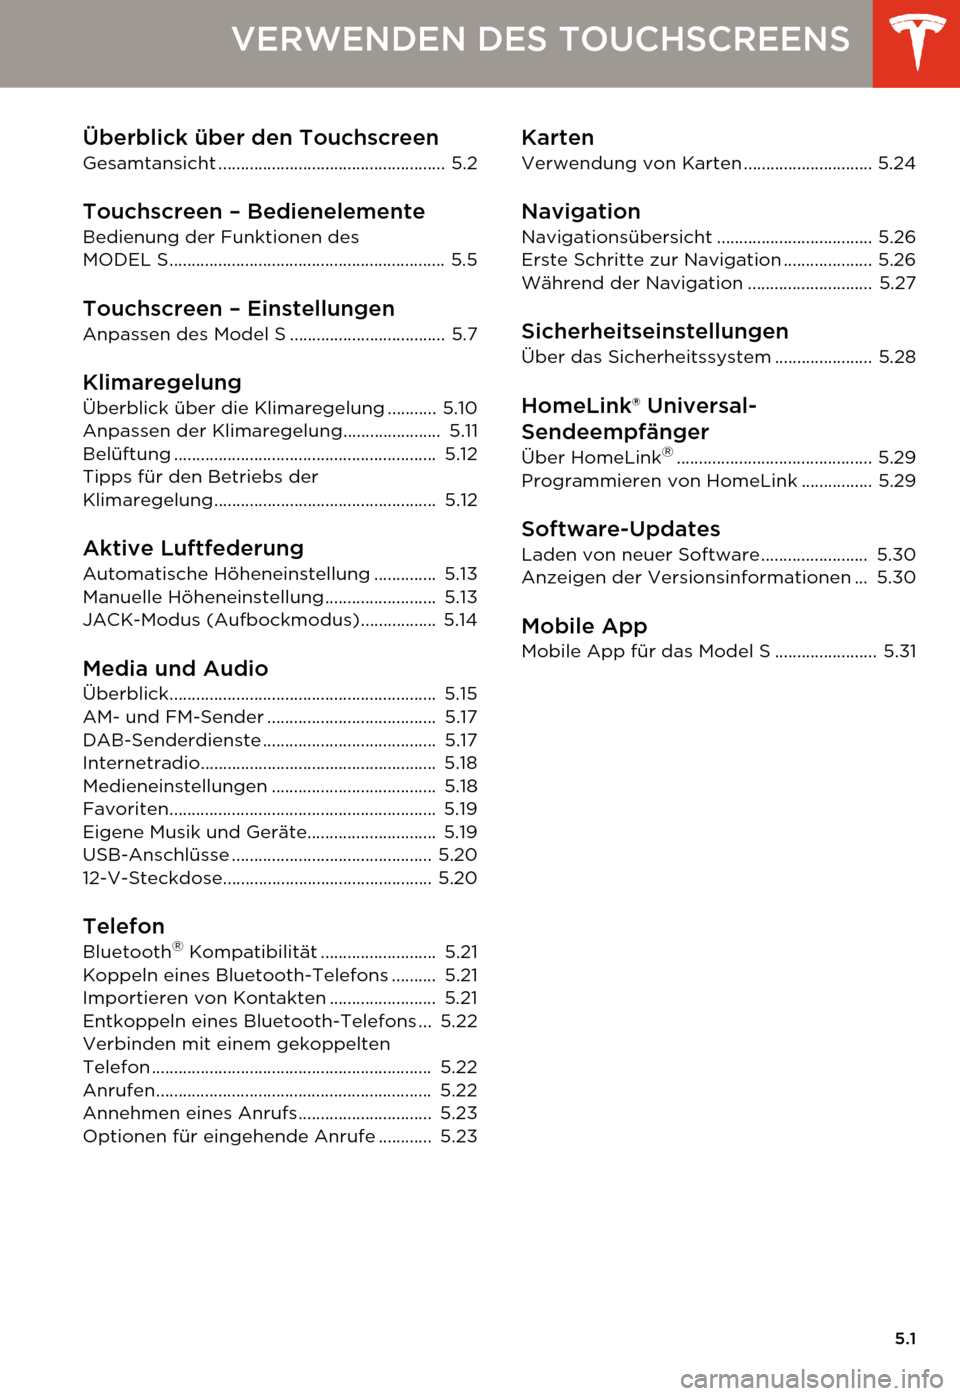 TESLA MODEL S 2014  Betriebsanleitung (in German) 5.1
VERWENDEN DES TOUCHSCREENS
Überblick über den Touchscreen
Gesamtansicht ................................................... 5.2
Touchscreen – Bedienelemente
Bedienung der Funktionen des 
MODEL